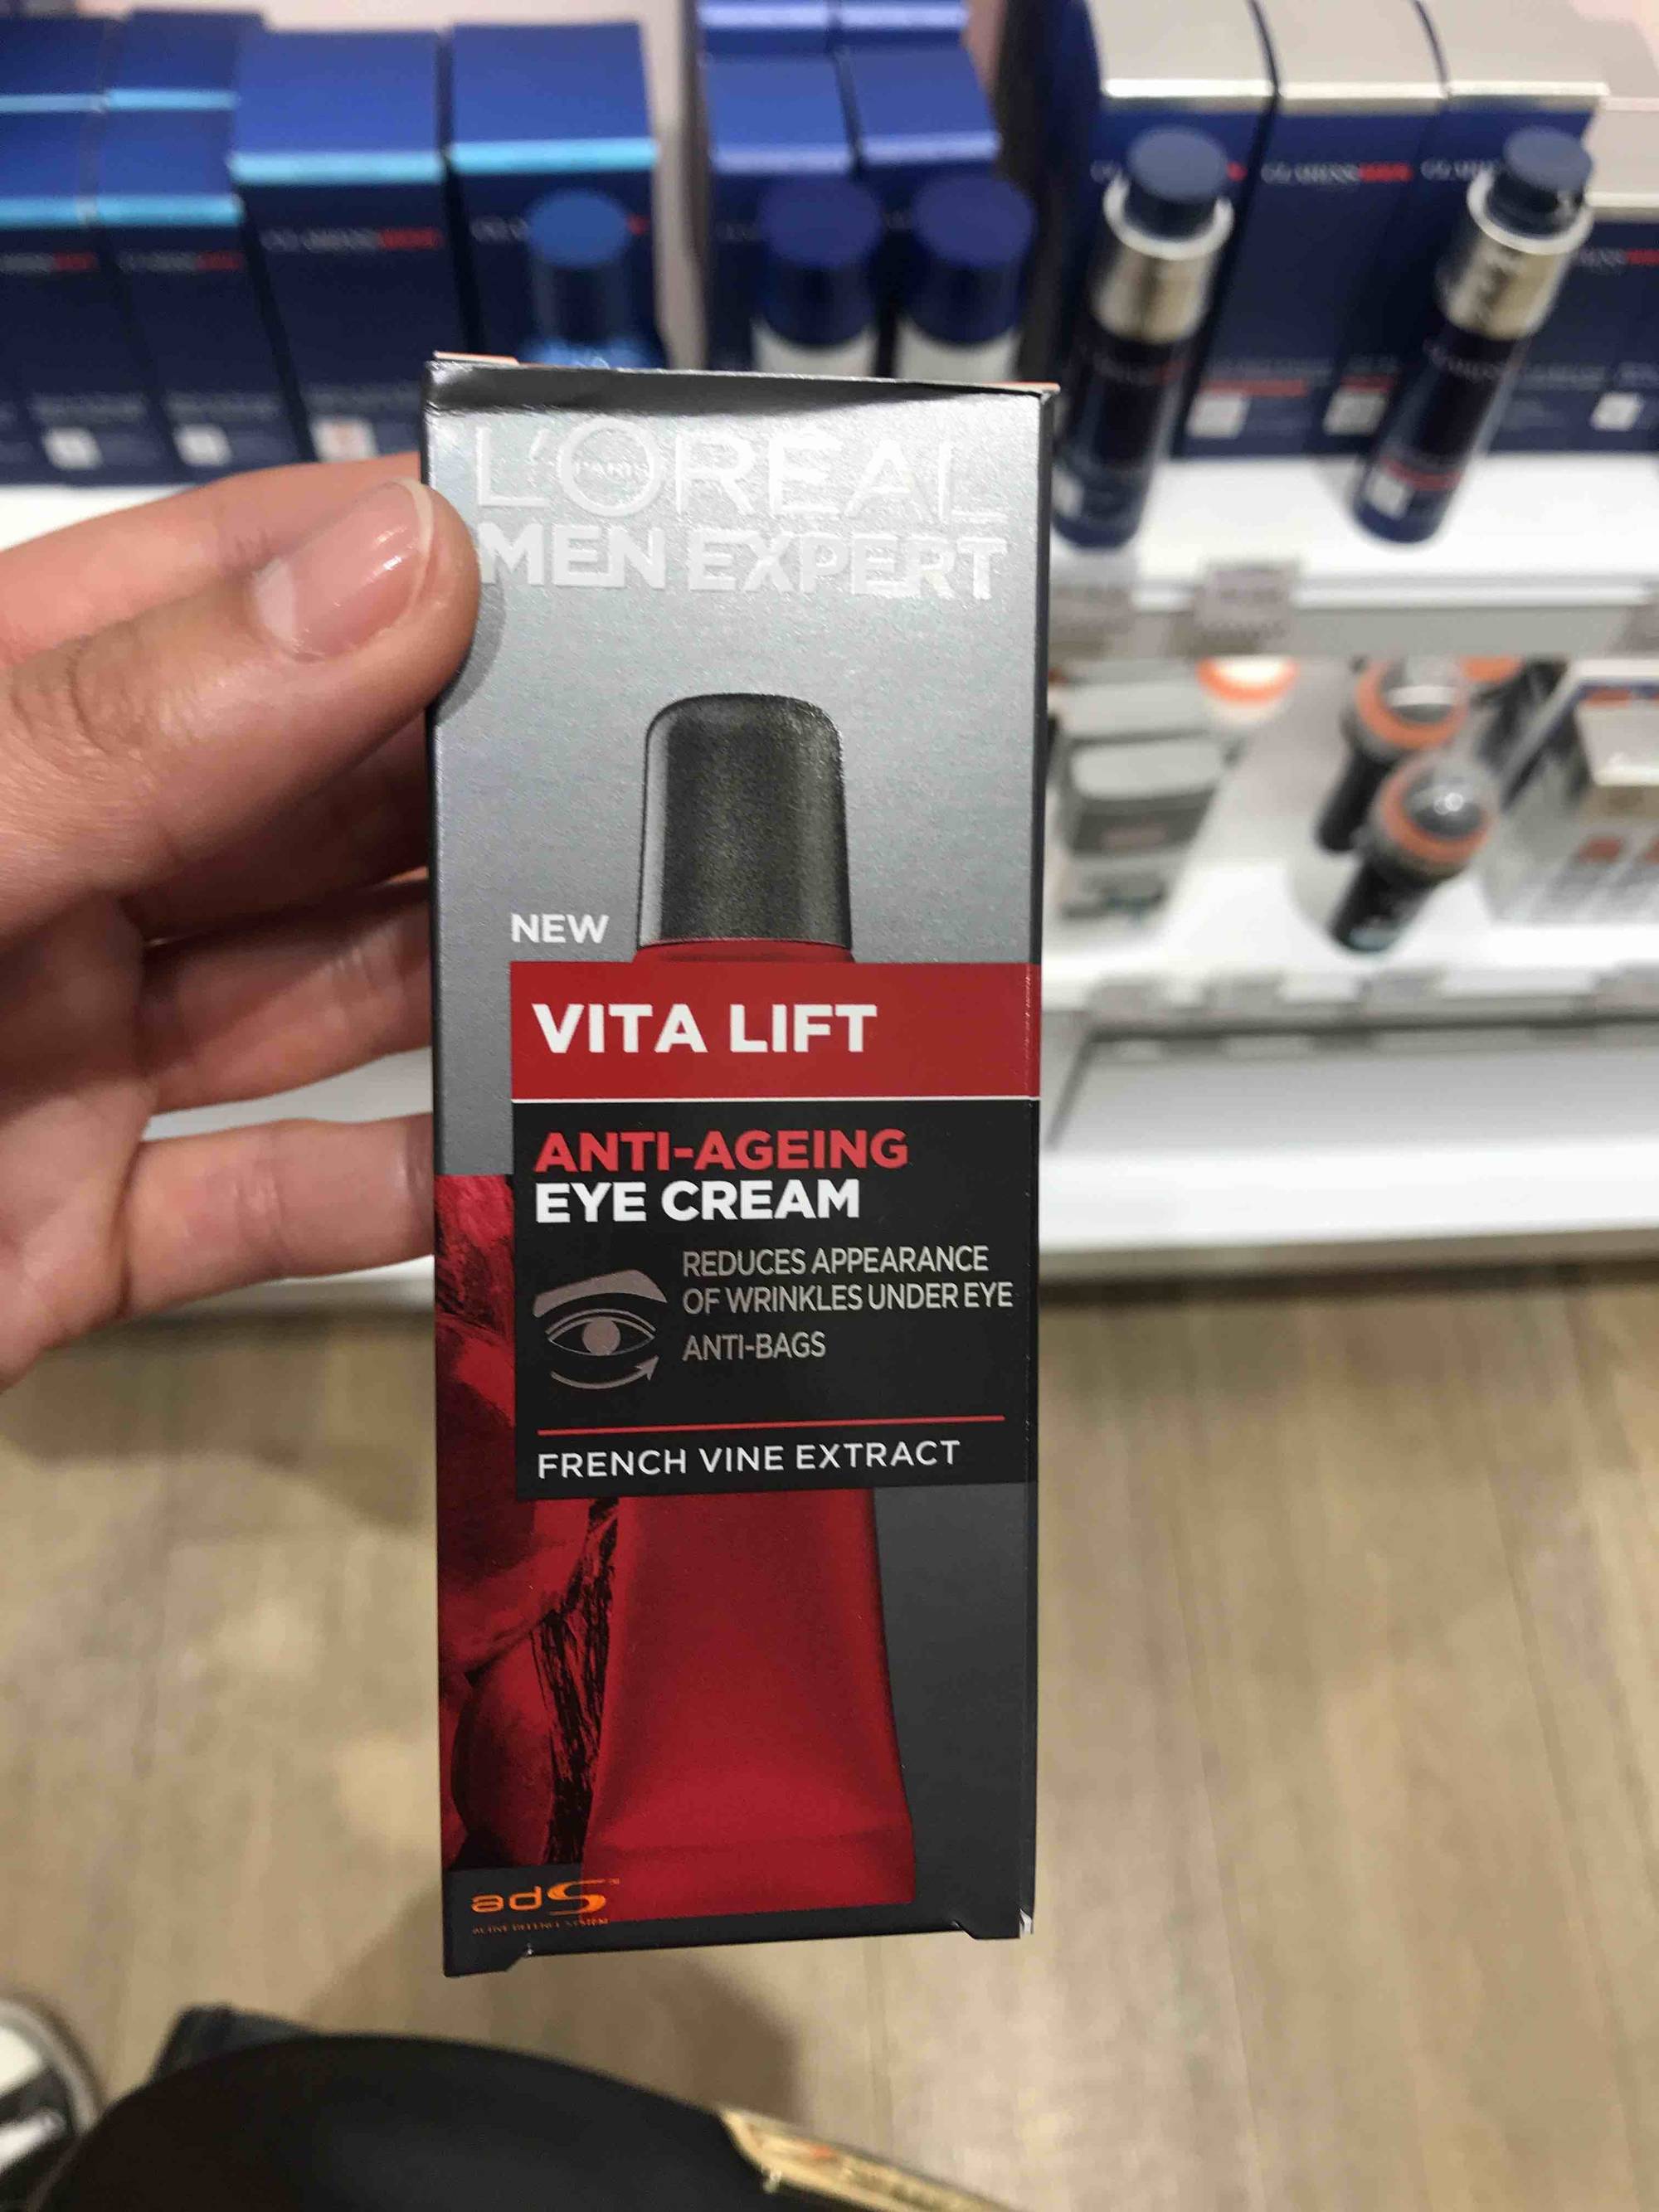 L'ORÉAL - Men expert - Vita lift 